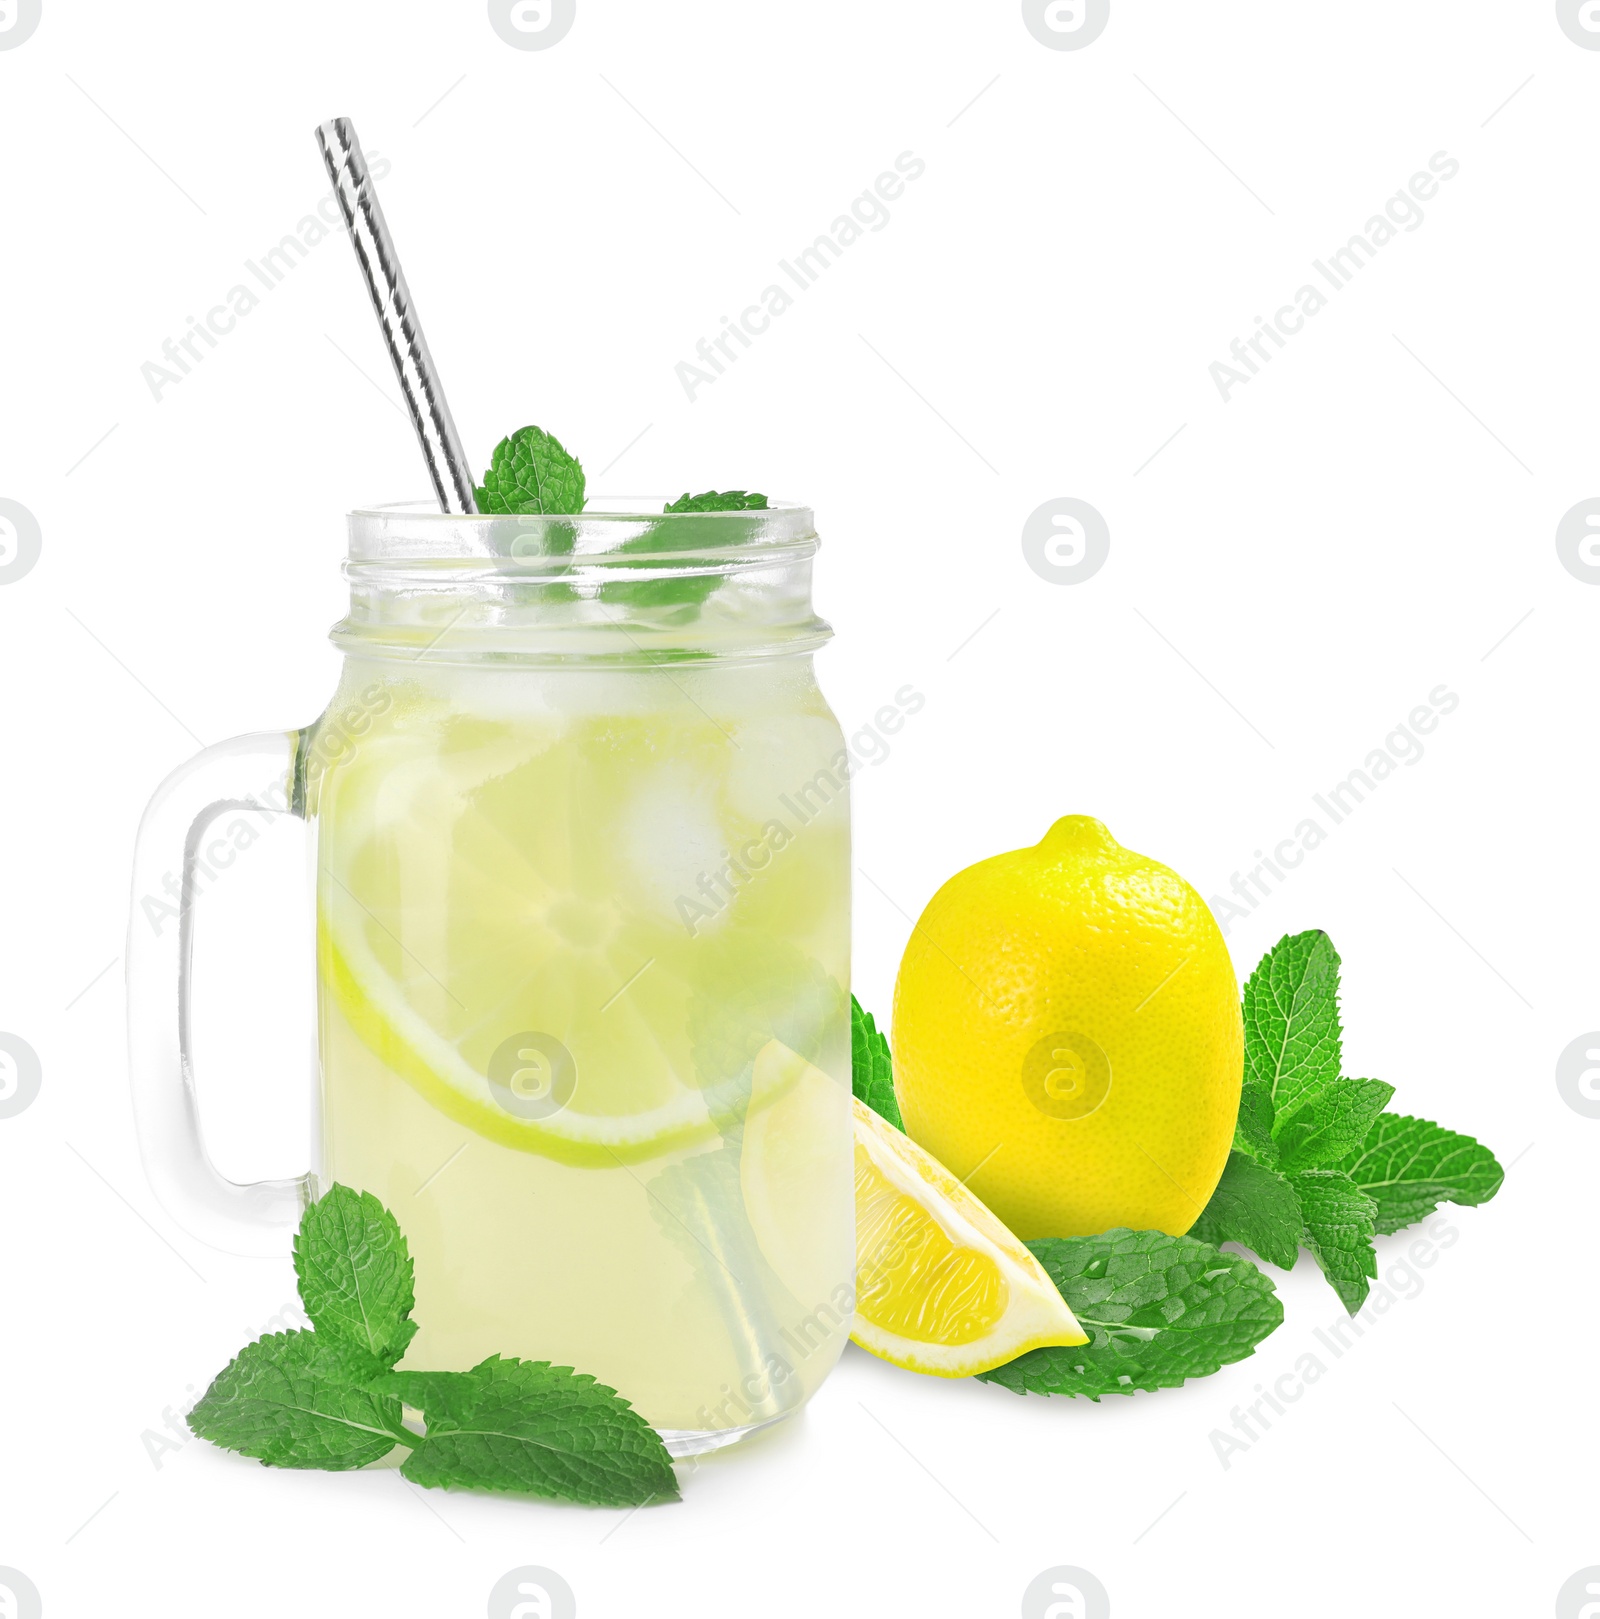 Image of Mason jar with tasty lemonade, fresh ripe fruits and mint on white background